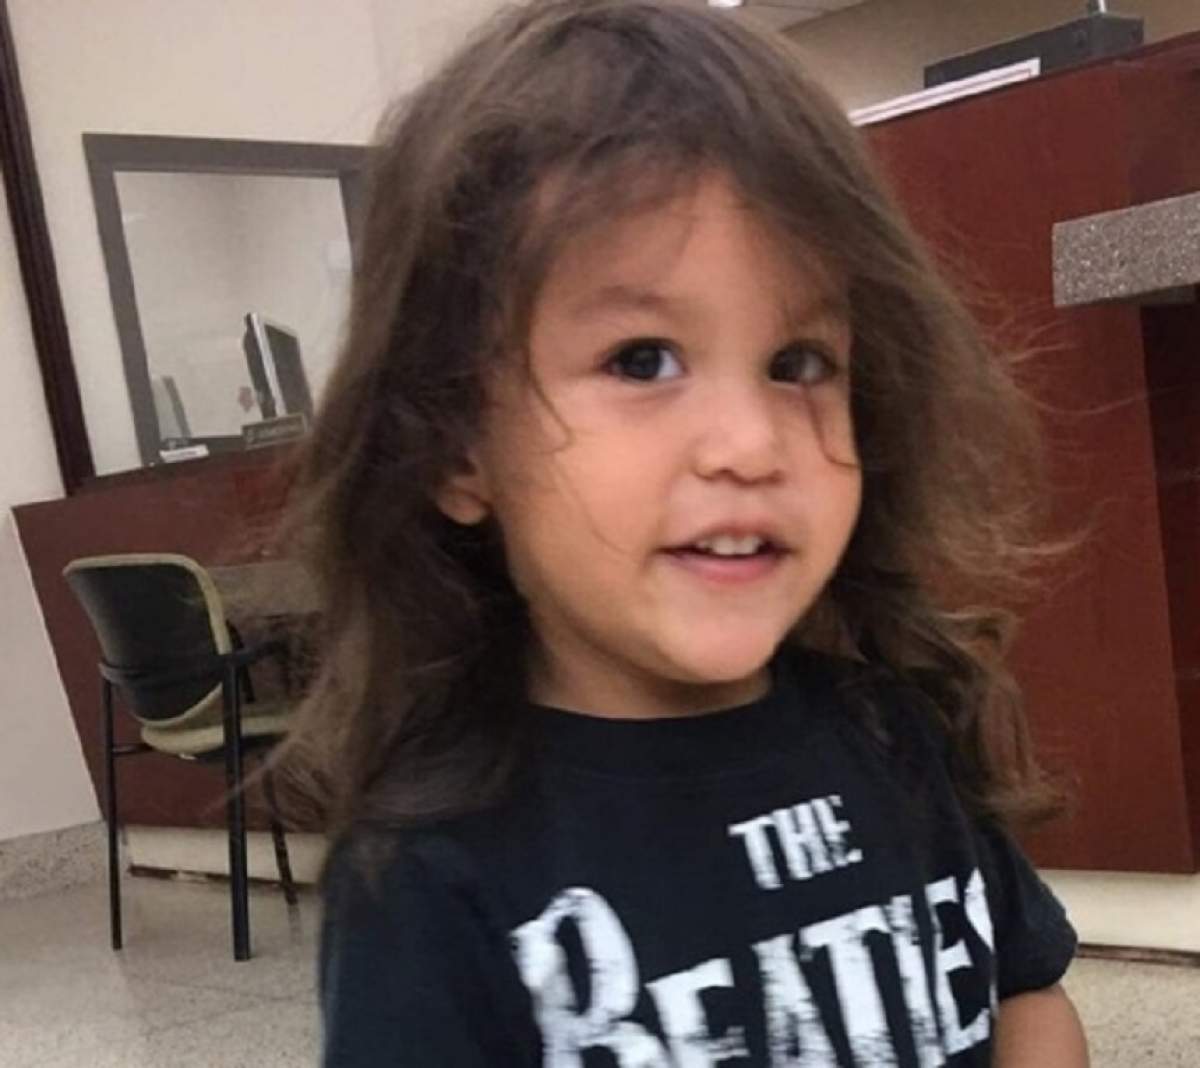 Un băieţel de doi ani a murit după ce a mers la stomatolog! Ce decizie tulburătoare au luat părinţii